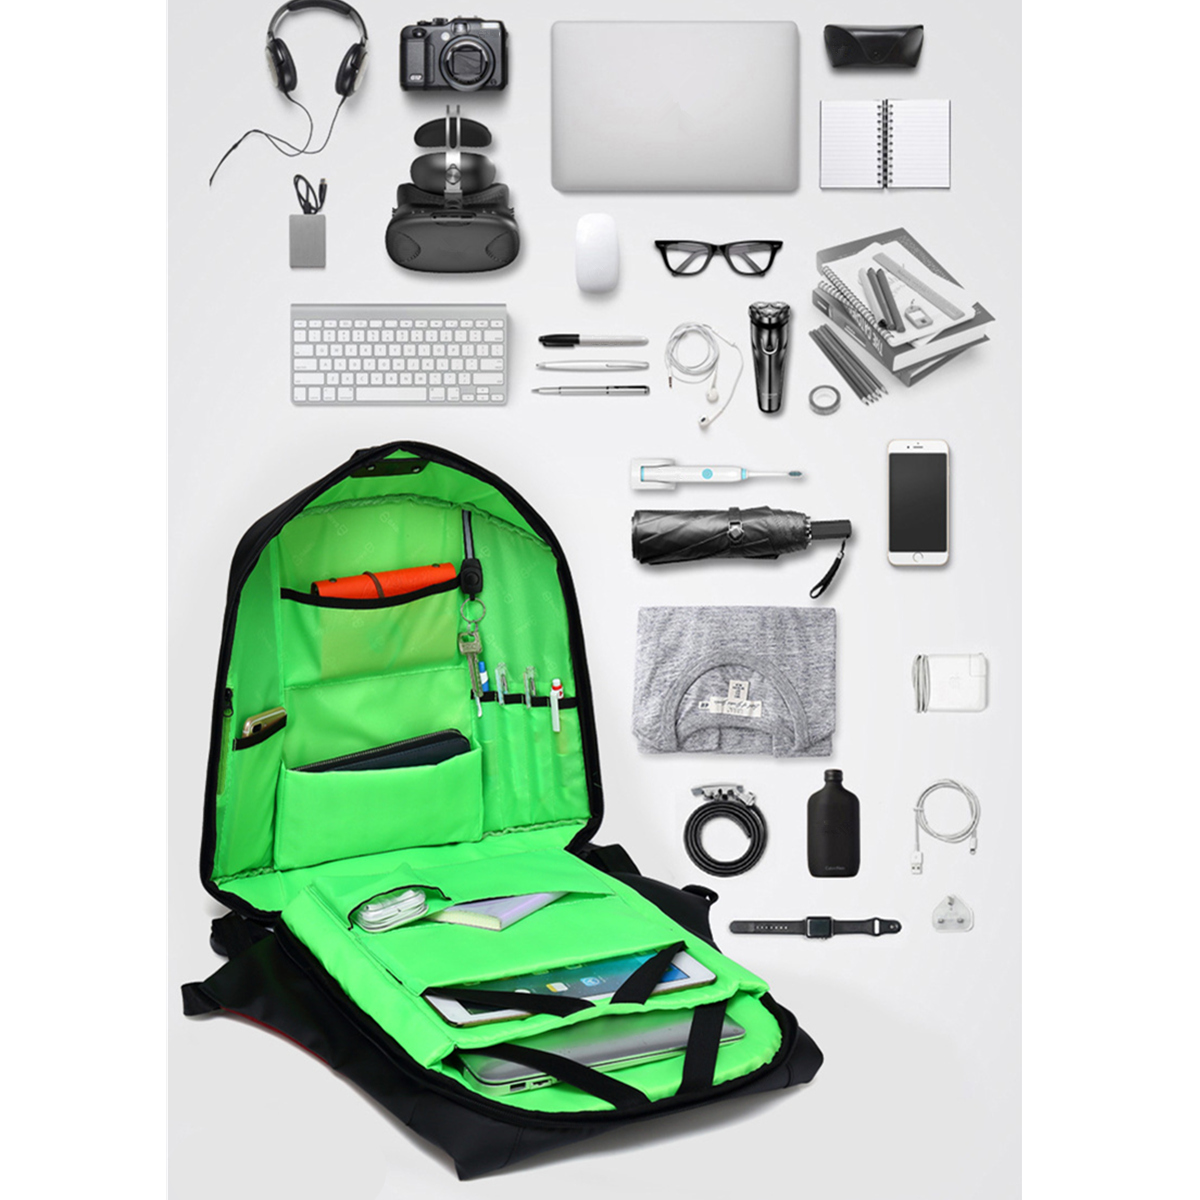 156-Inch-Laptop-Backpack-Bag-Travel-Bag-Student-Bag-With-External-USB-Charging-Port-1288885-3